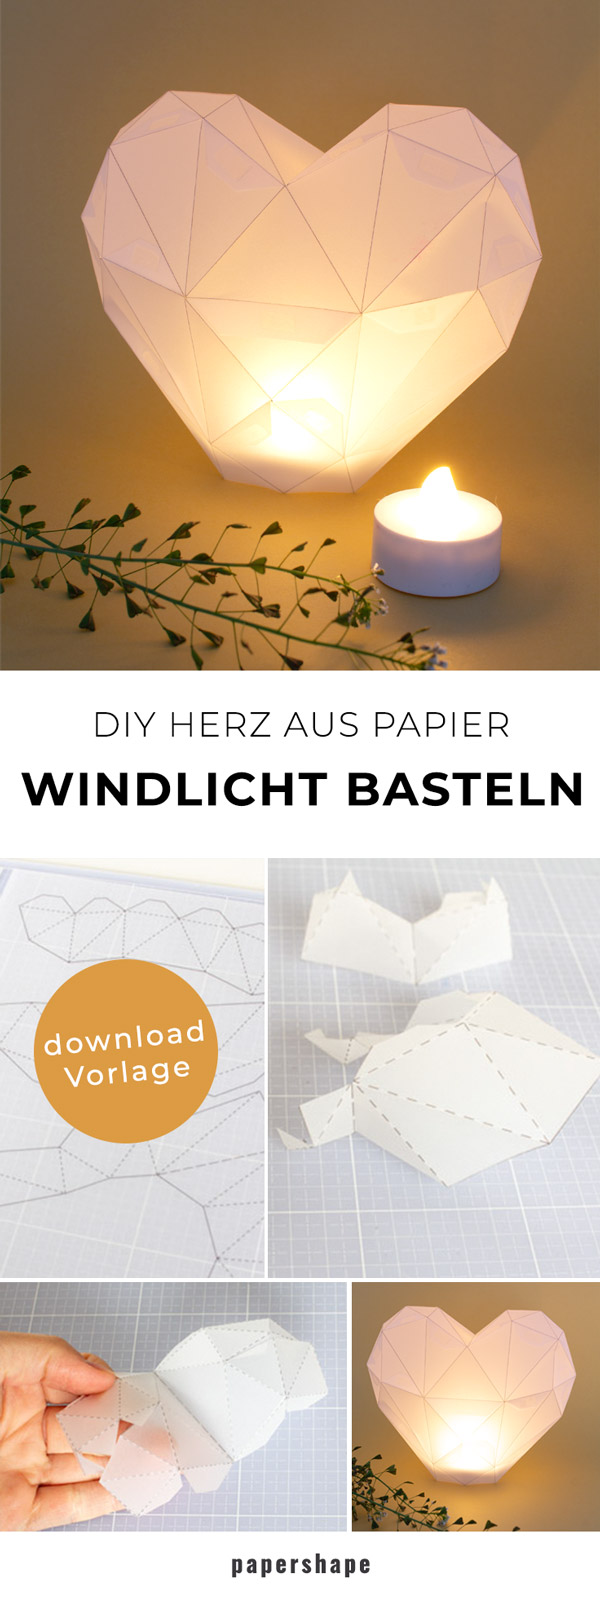 DIY Windlicht basteln als Herz aus Transparentpapier für die Hochzeit, zum Muttertag oder als Dekoration #papercraft #diy #bastelnmitpapier #windlicht #papershape